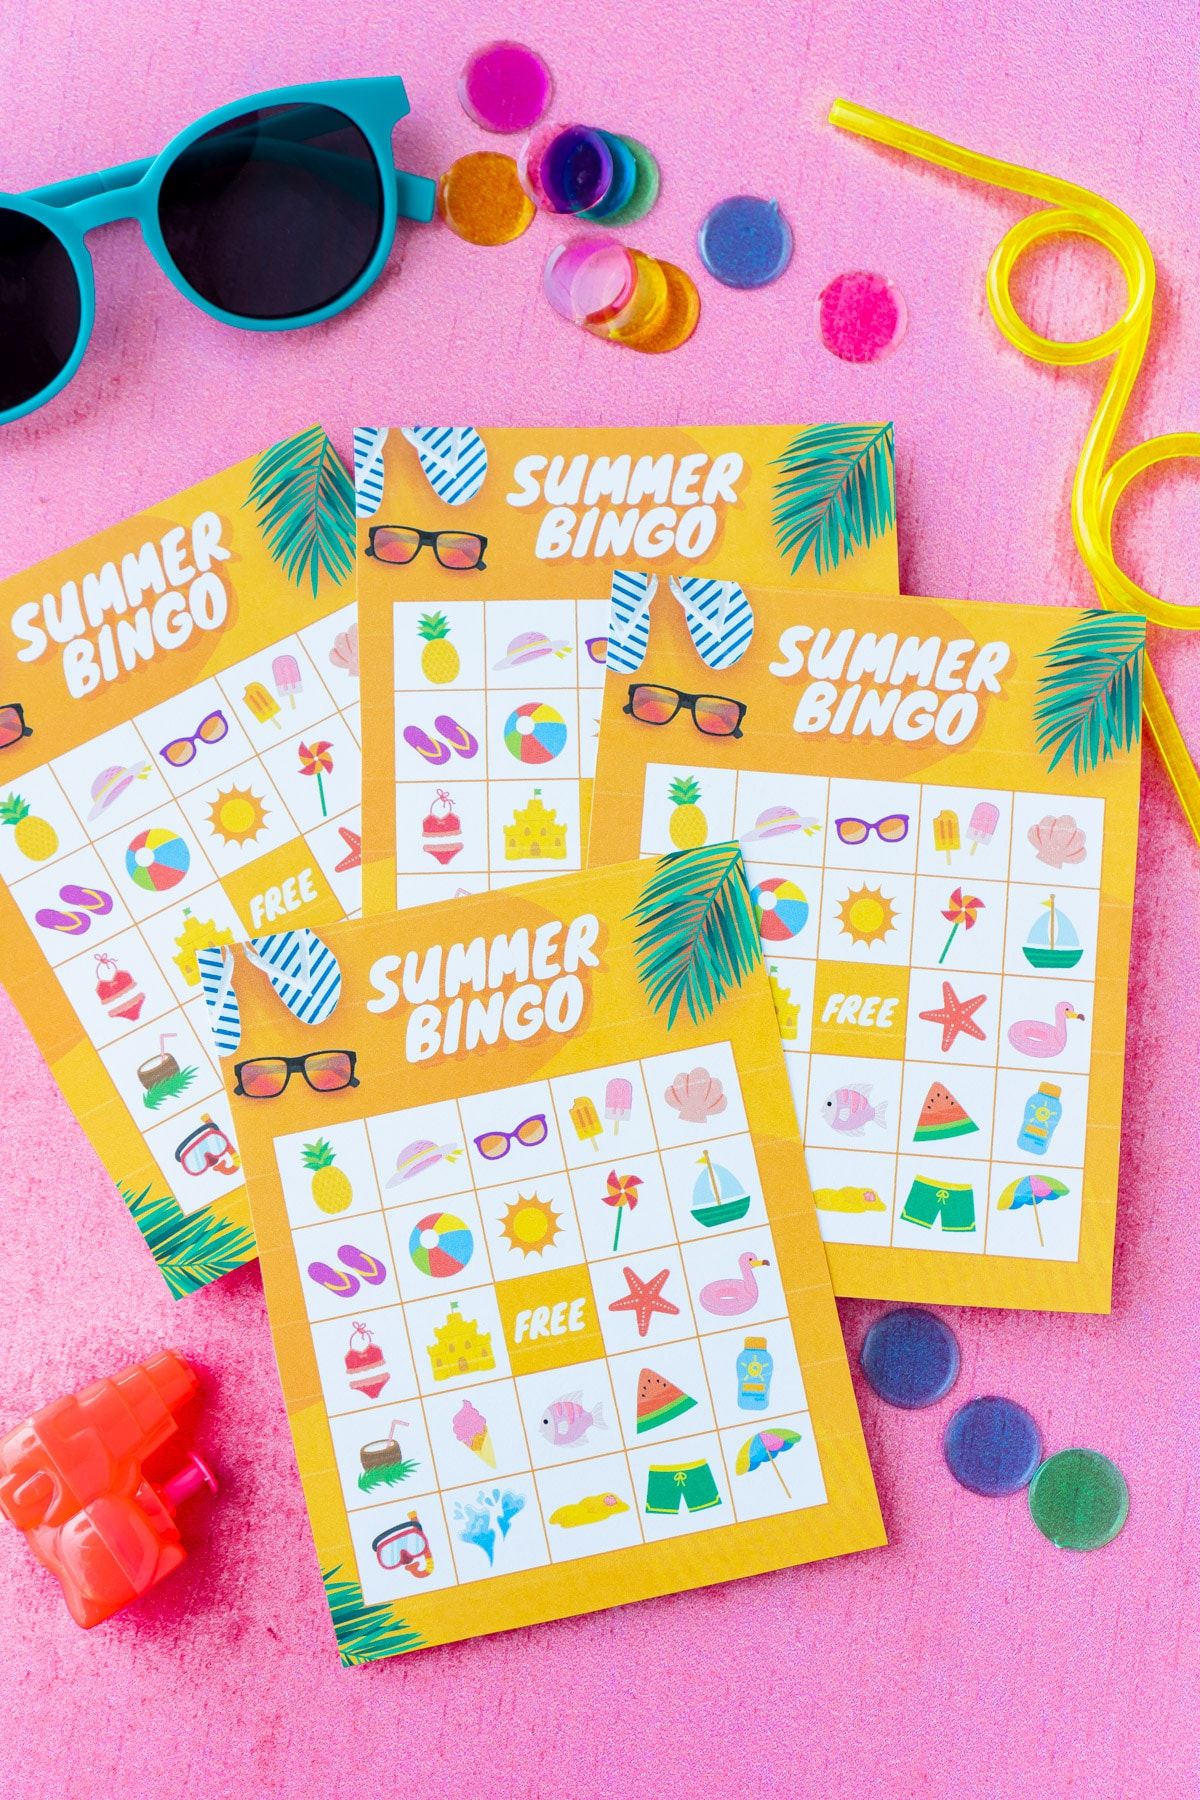 Apat na orange na mga tag-init na bingo card na may salaming pang-araw at mga marker ng bingo